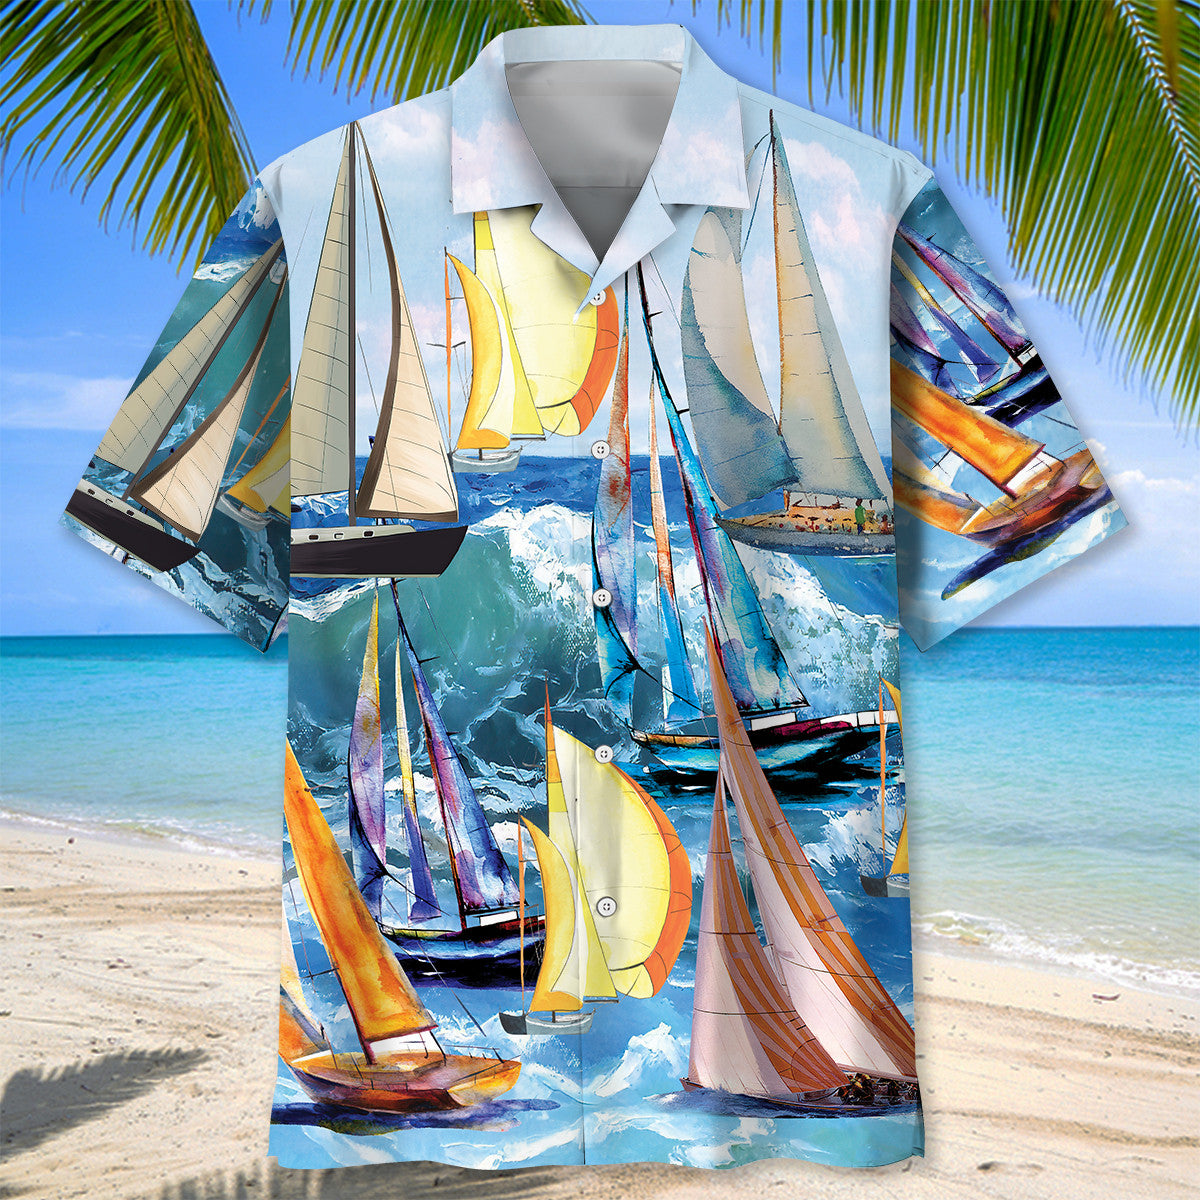 Vintage Sailboat Hawaiian Shirt